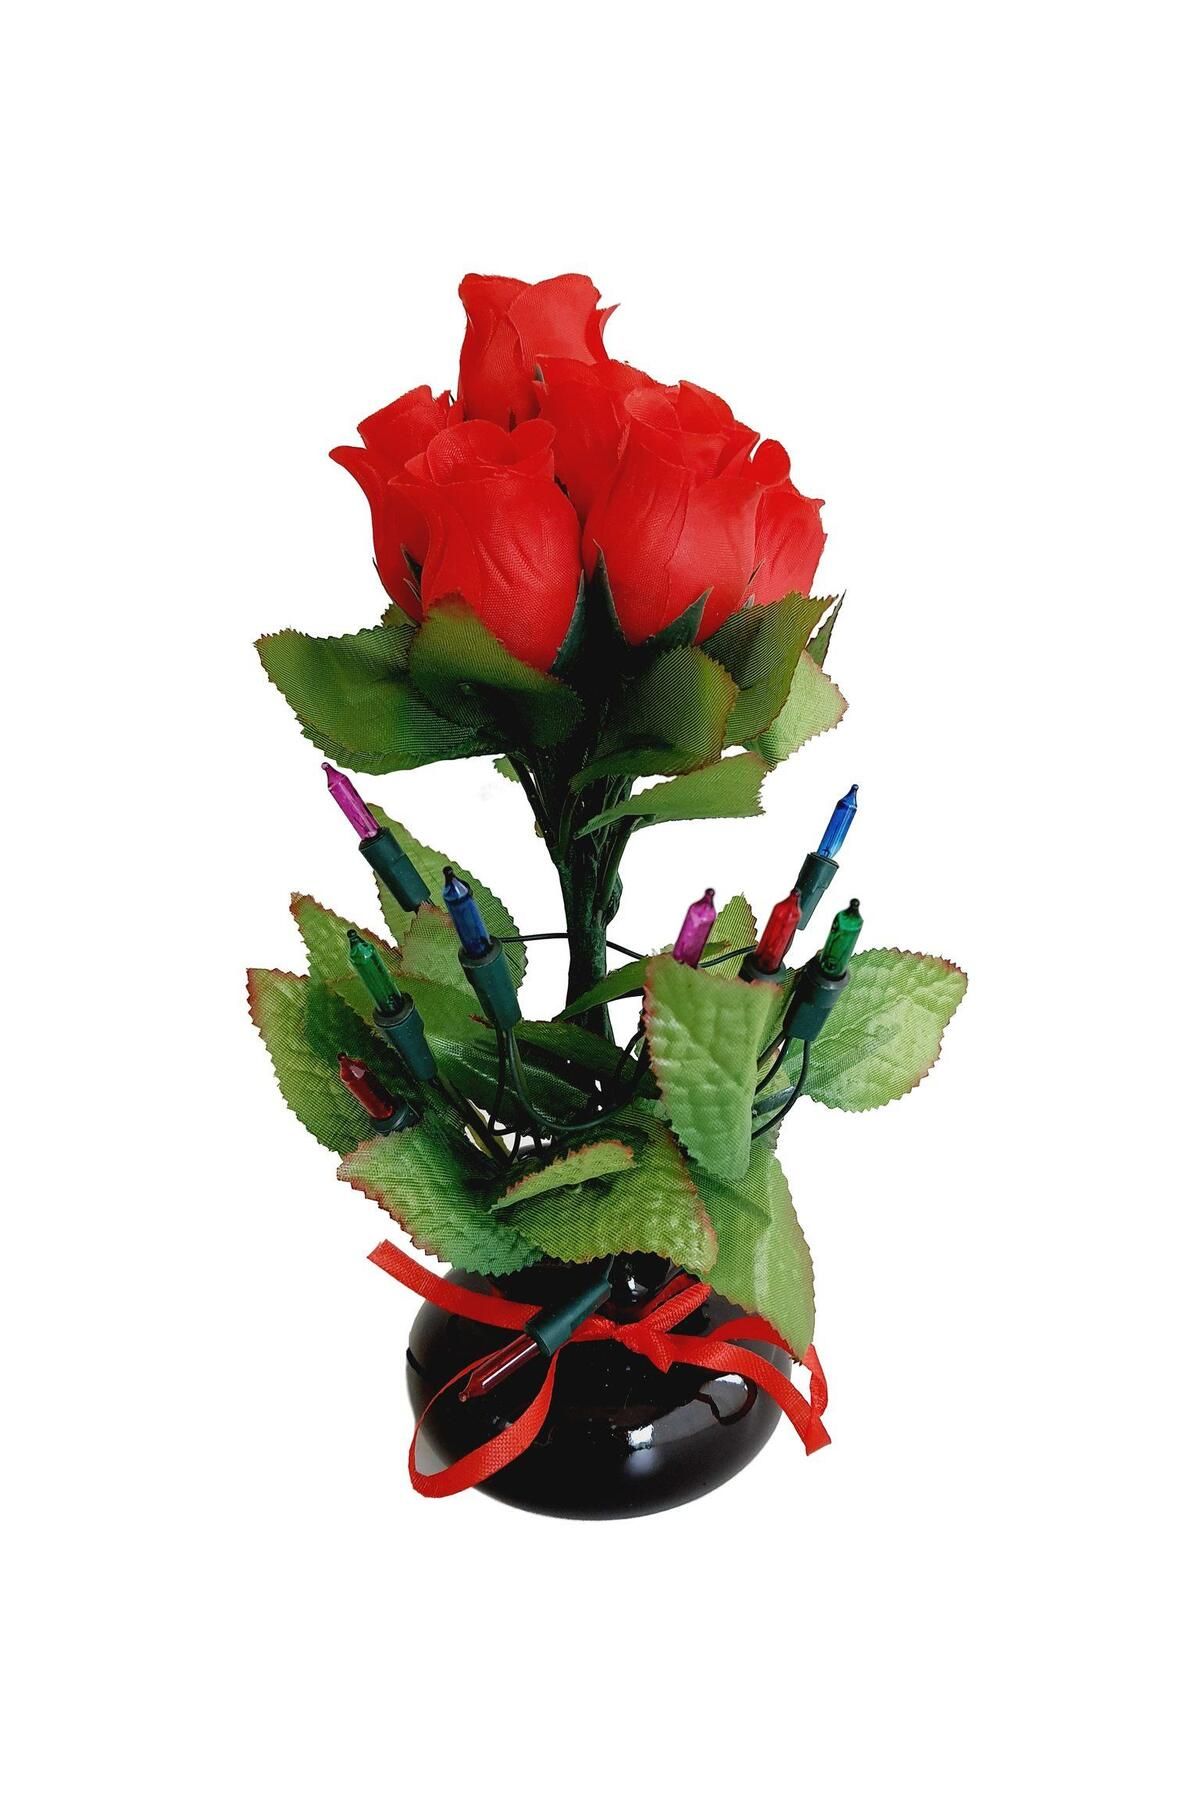 Hasyılmaz 90'lar Temalı Dekoratif Işıklı Yapay Çiçek 27cm (kırmızı Gül)